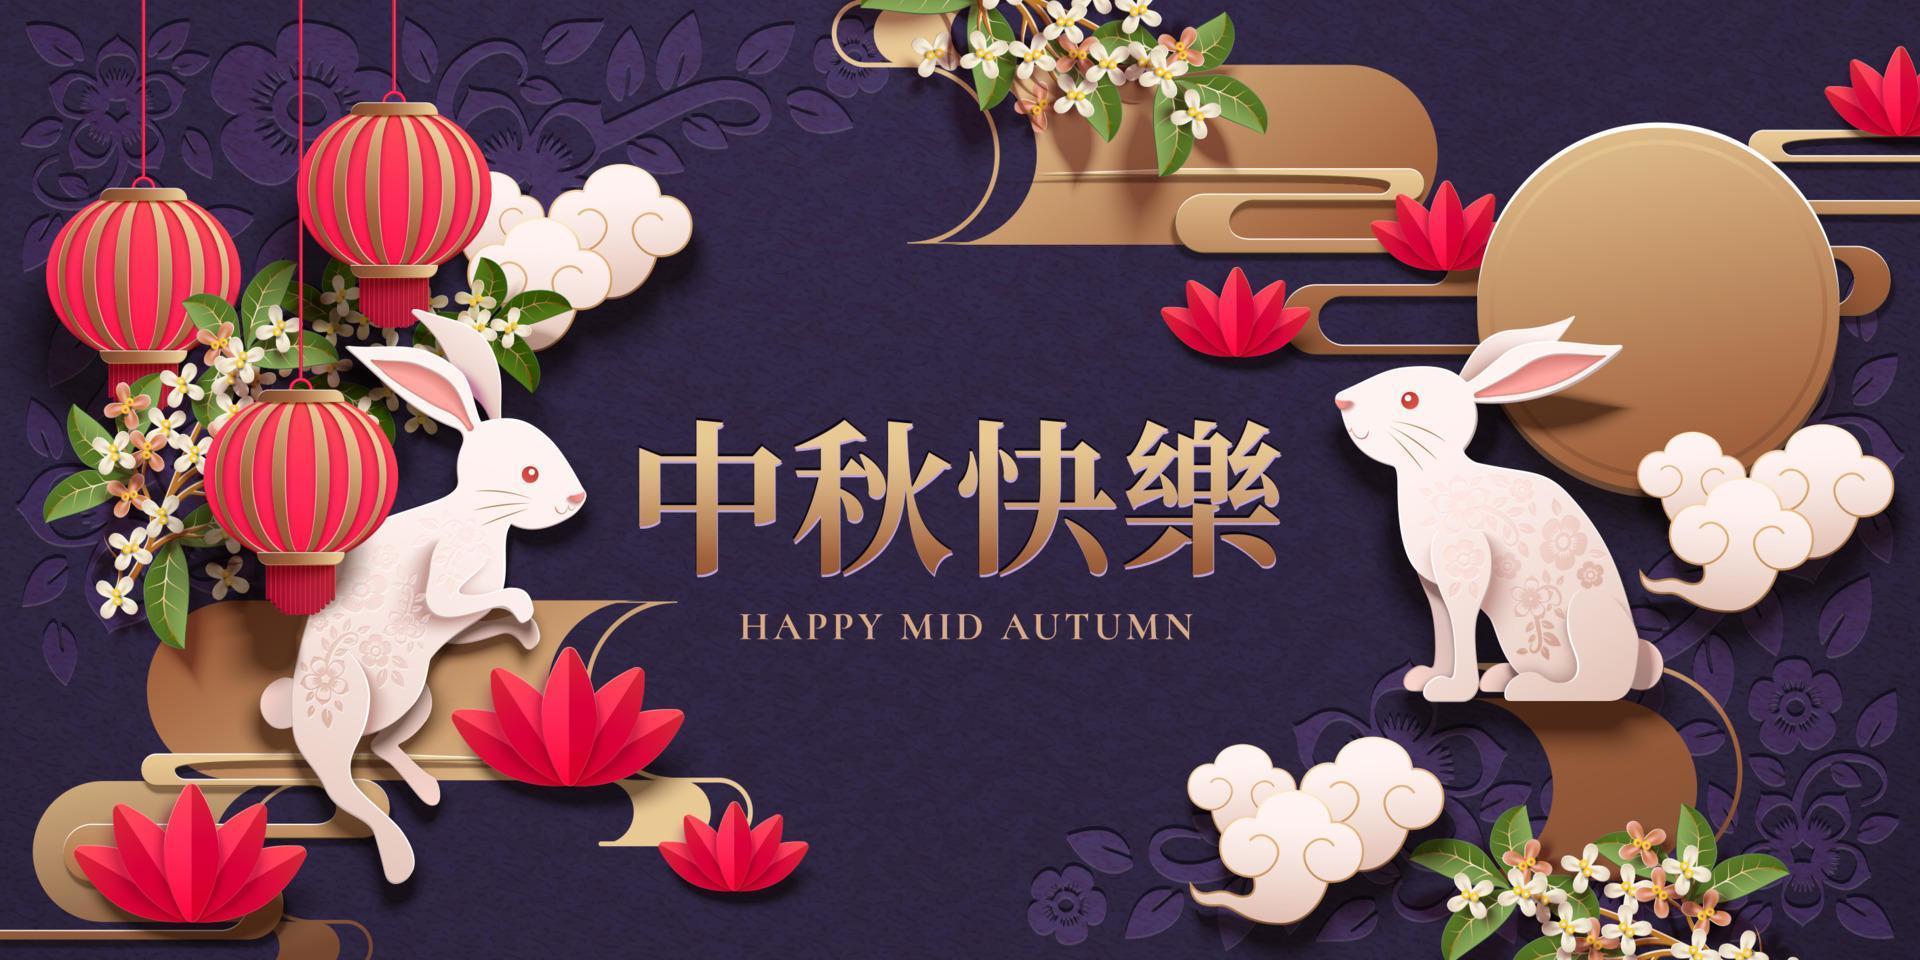 feliz diseño del festival de mediados de otoño con conejos de arte de papel y farolillos rojos sobre fondo morado, nombre de festividad escrito en chino vector